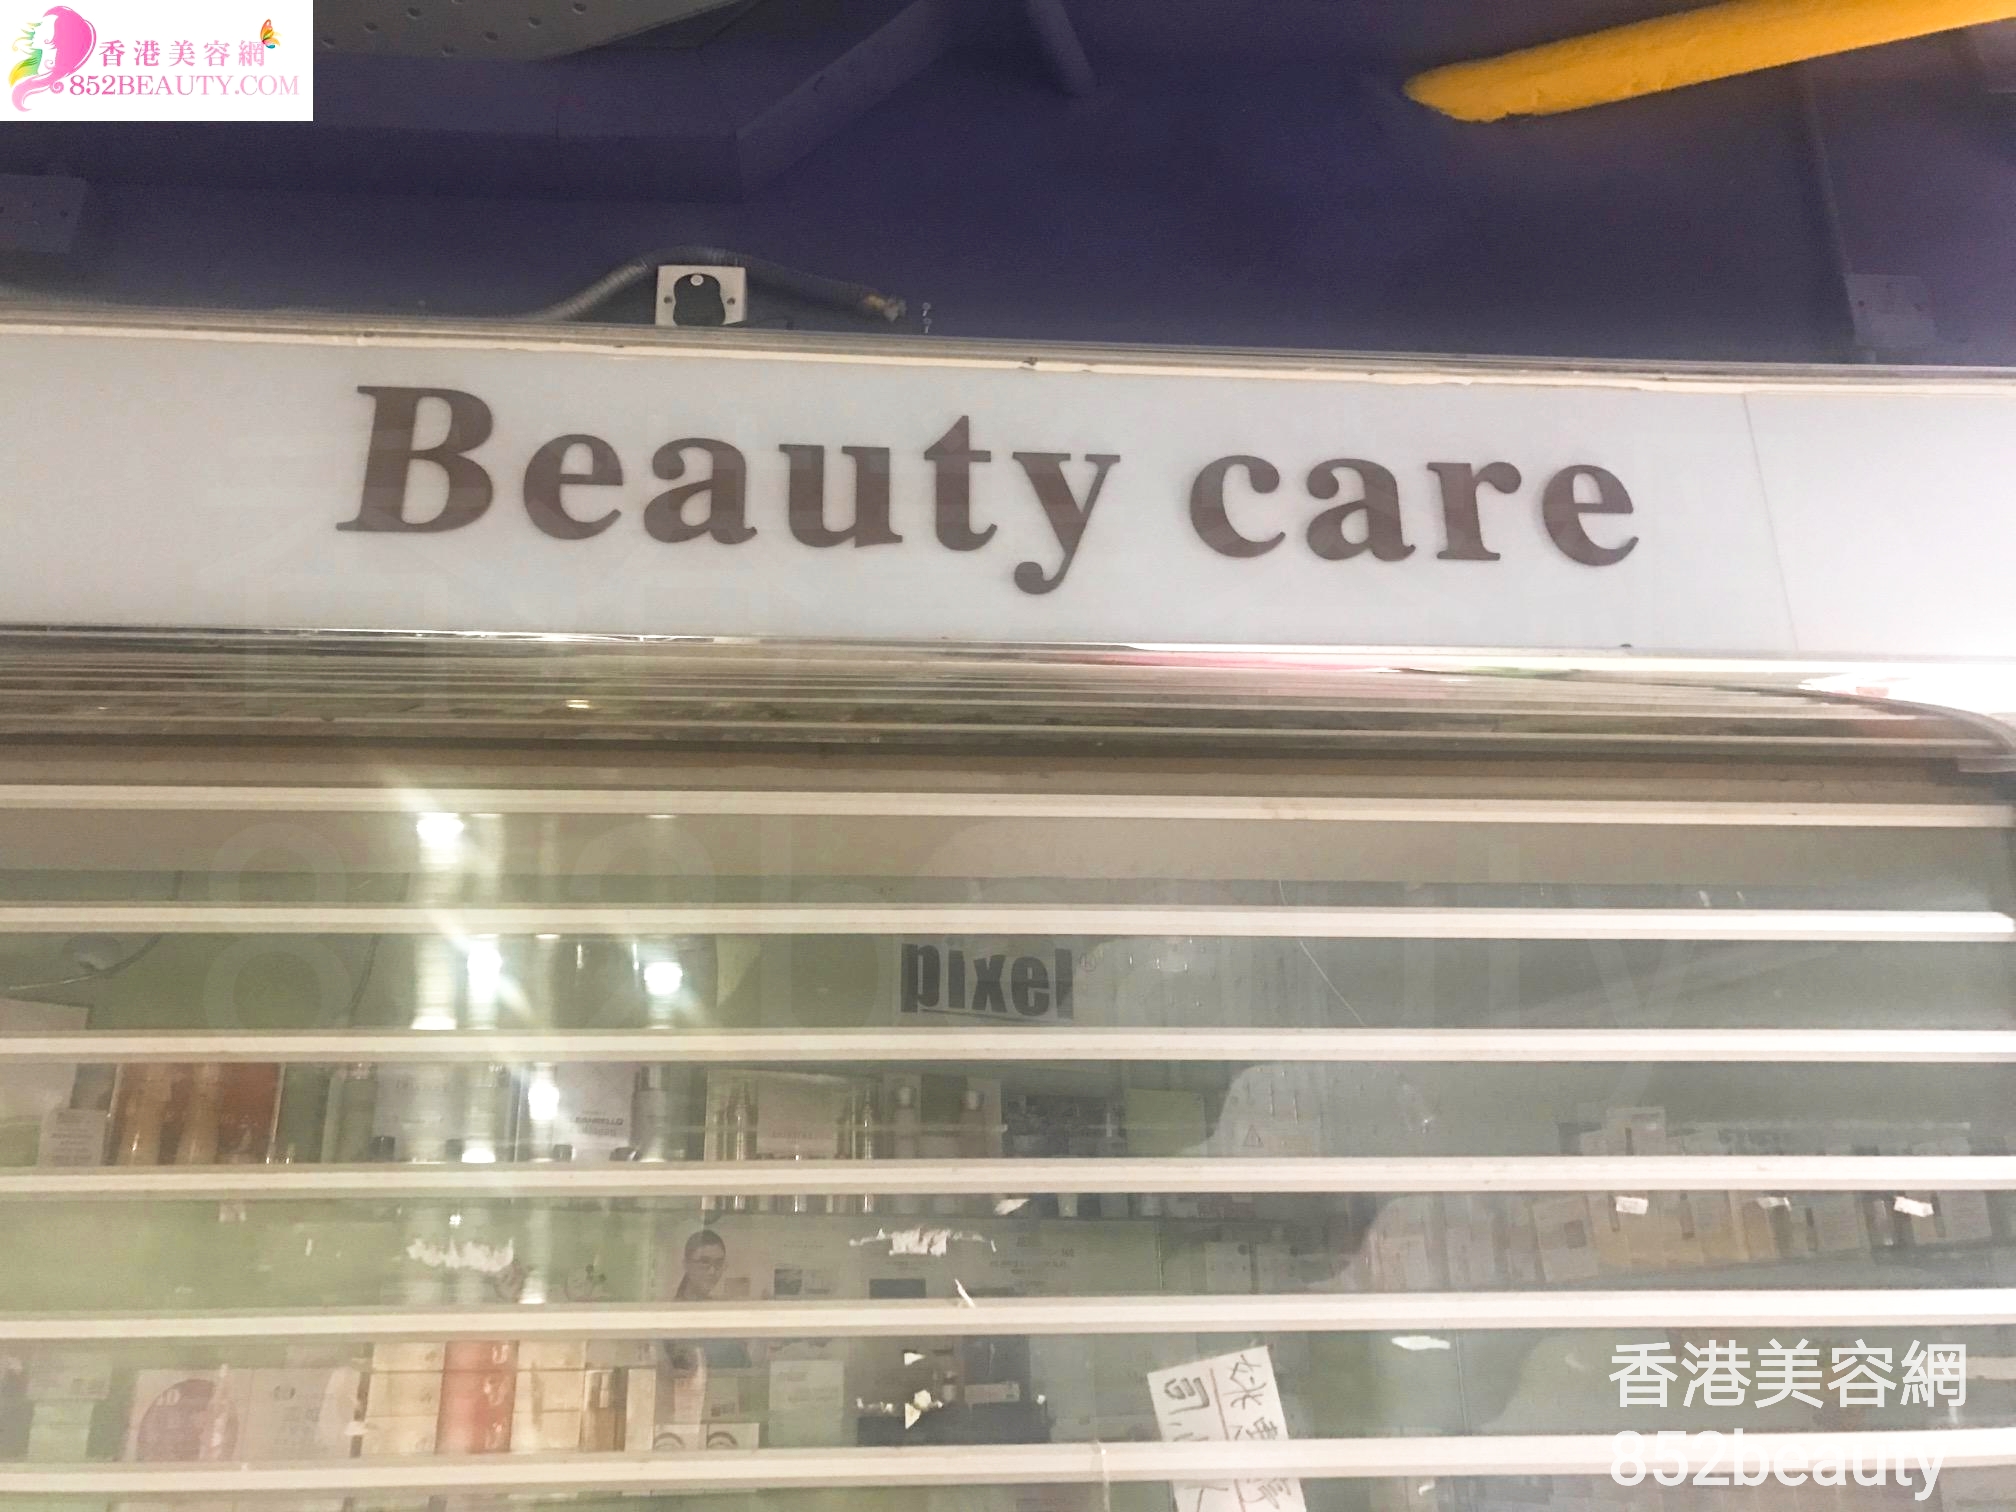 面部护理: Beauty care